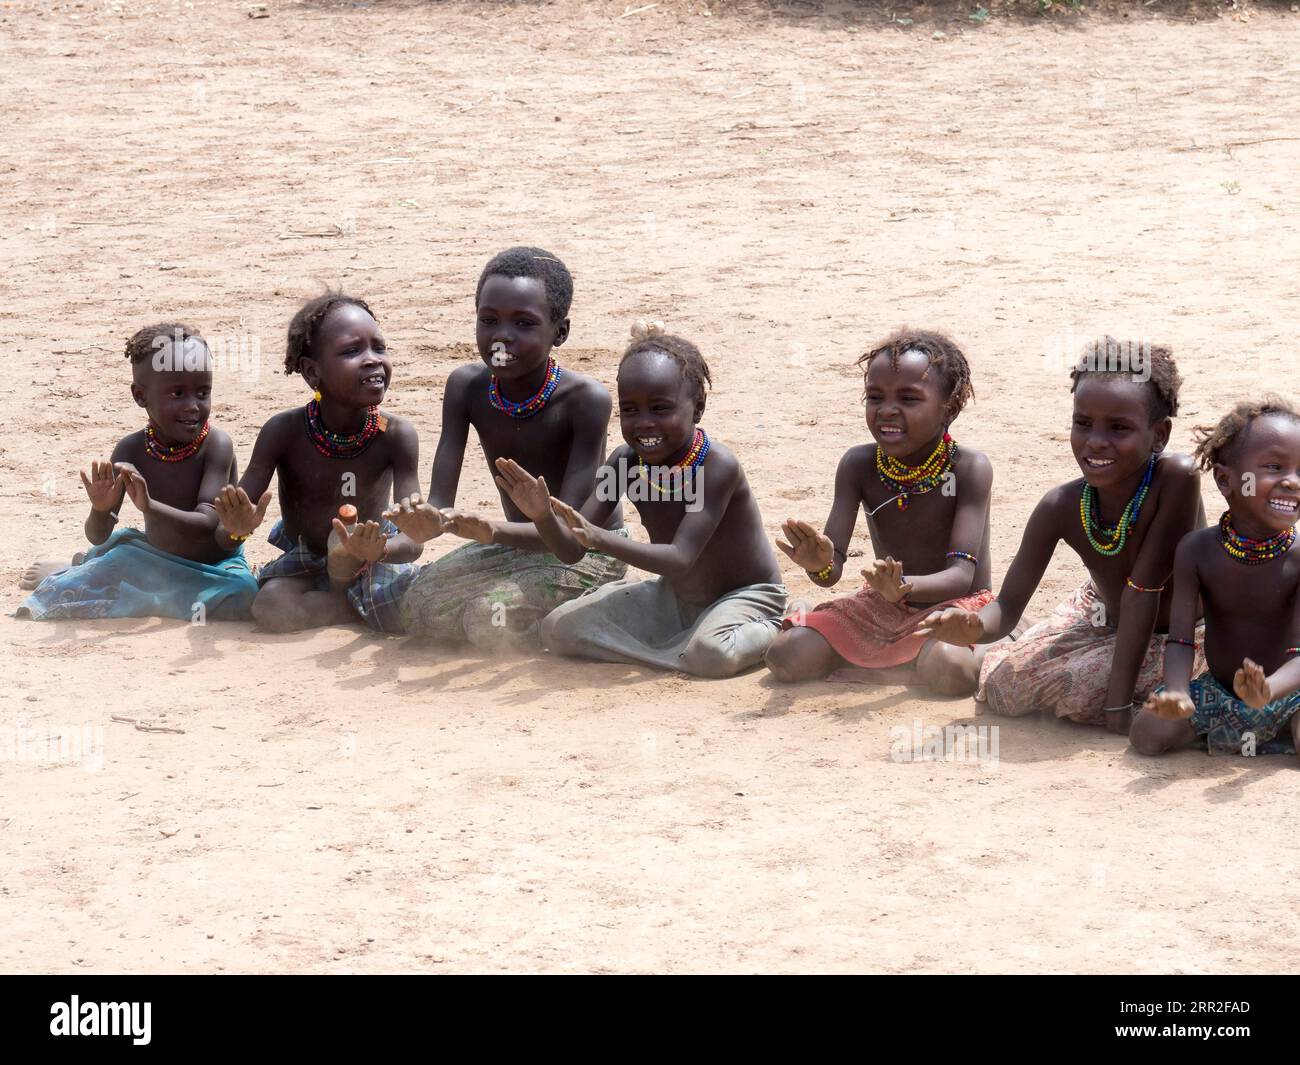 Singing happy children sitting on sandy ground, Dassanech tribe, Ethiopia Stock Photo